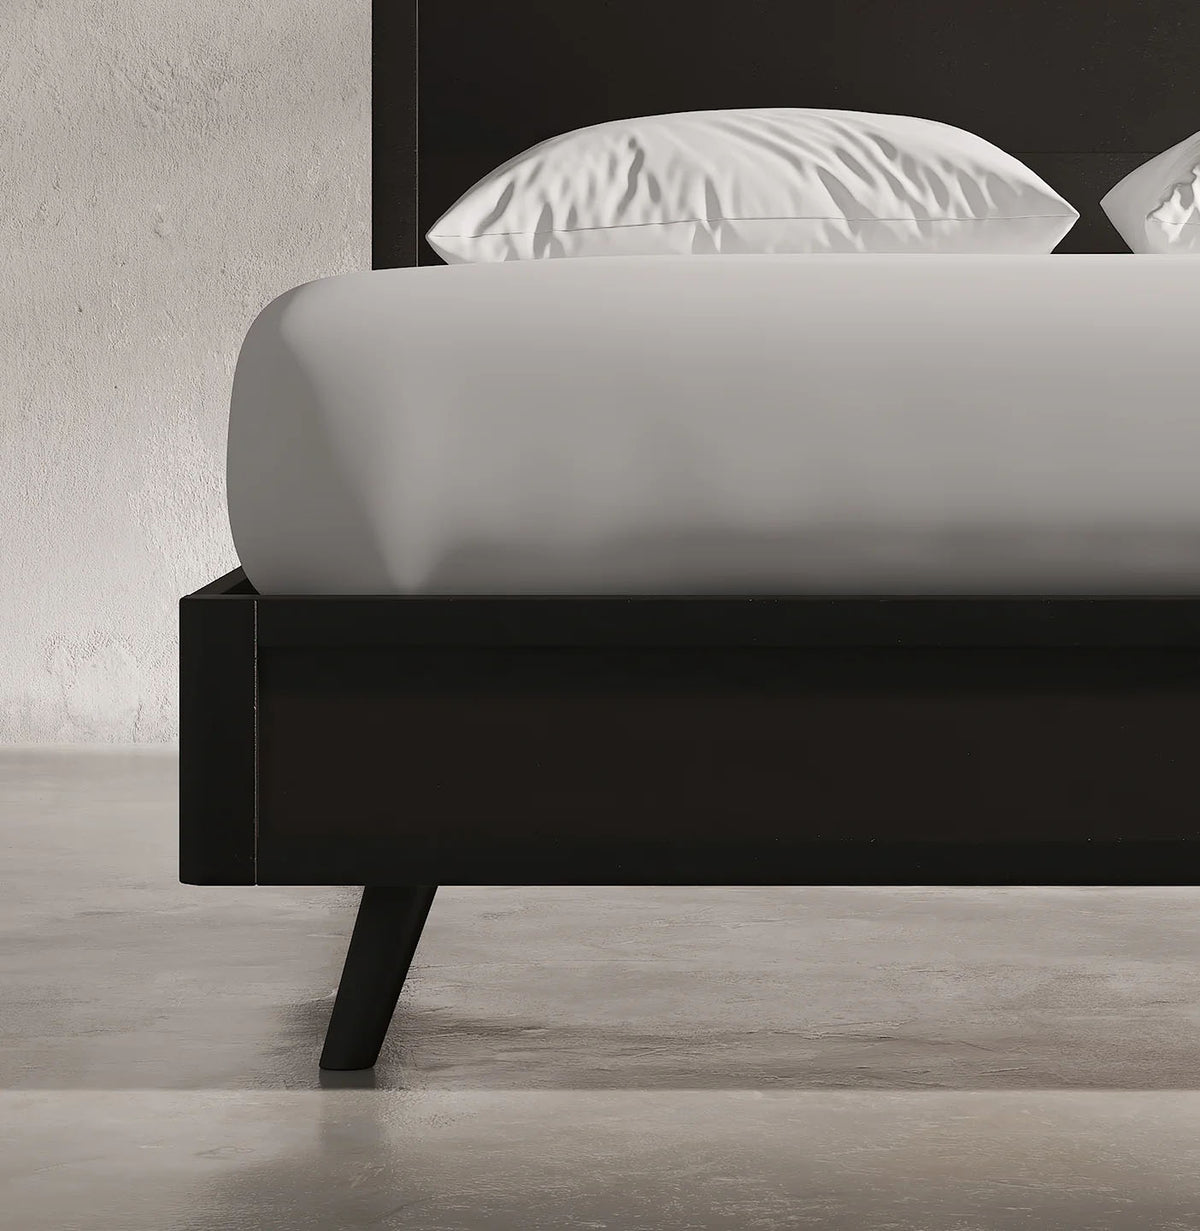 Luna Platform Bed - MJM Furniture